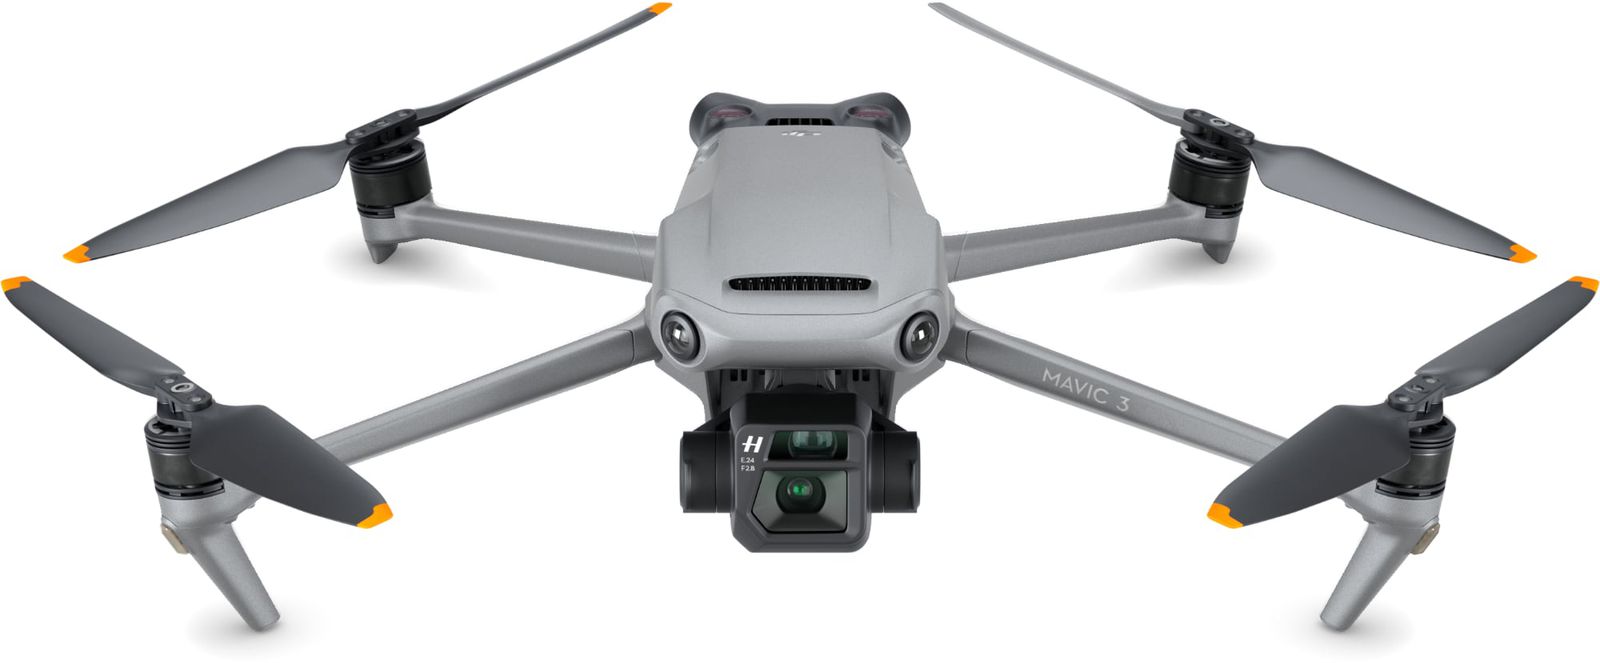 Comparación de drones de consumo - Compara la serie Mavic y otros